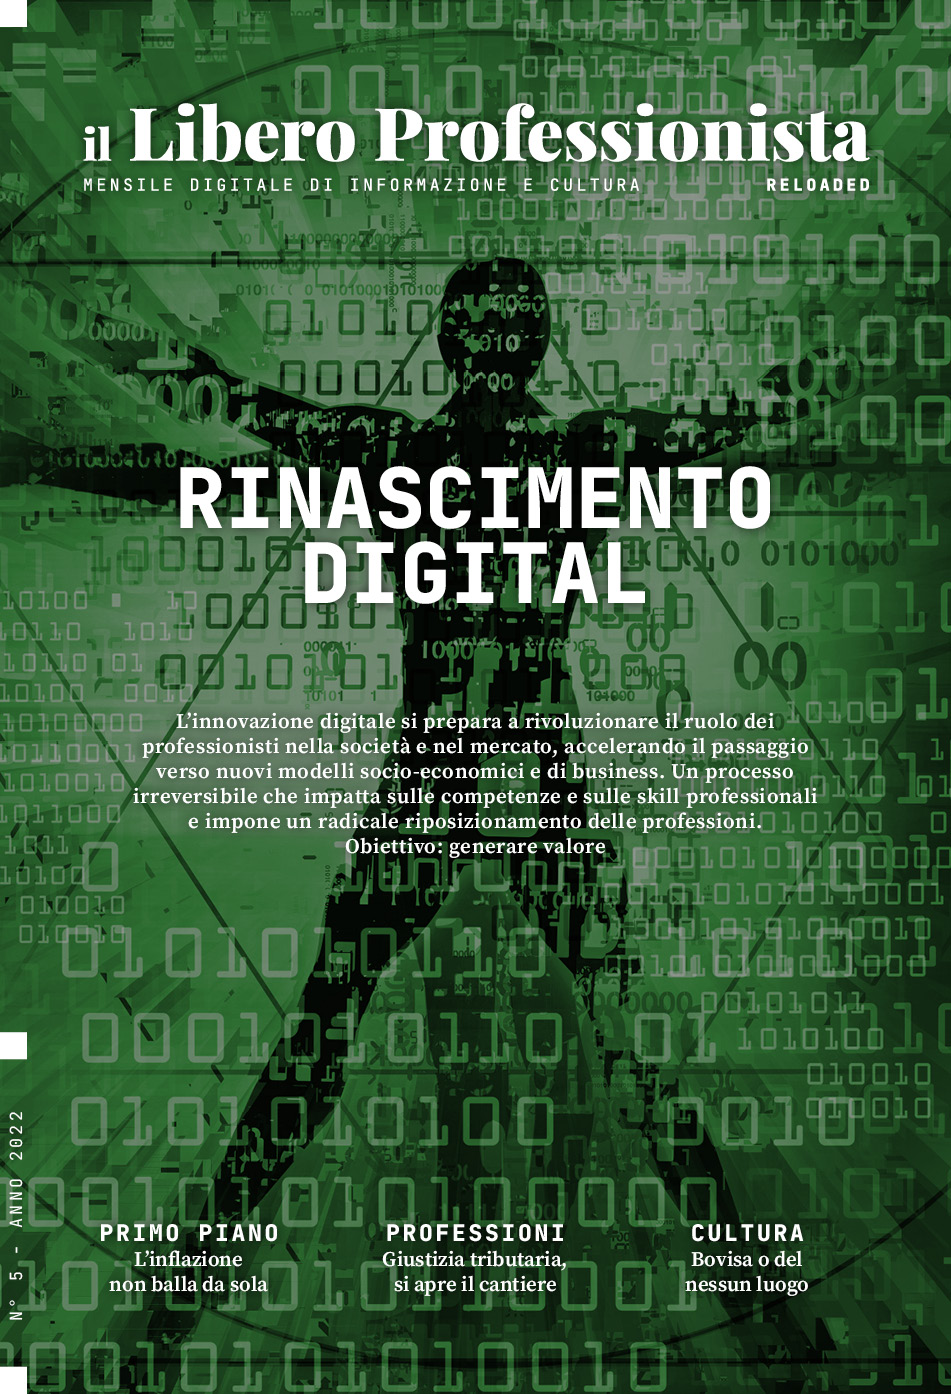 Il Libero Professionista reloaded #5: Rinascimento digital